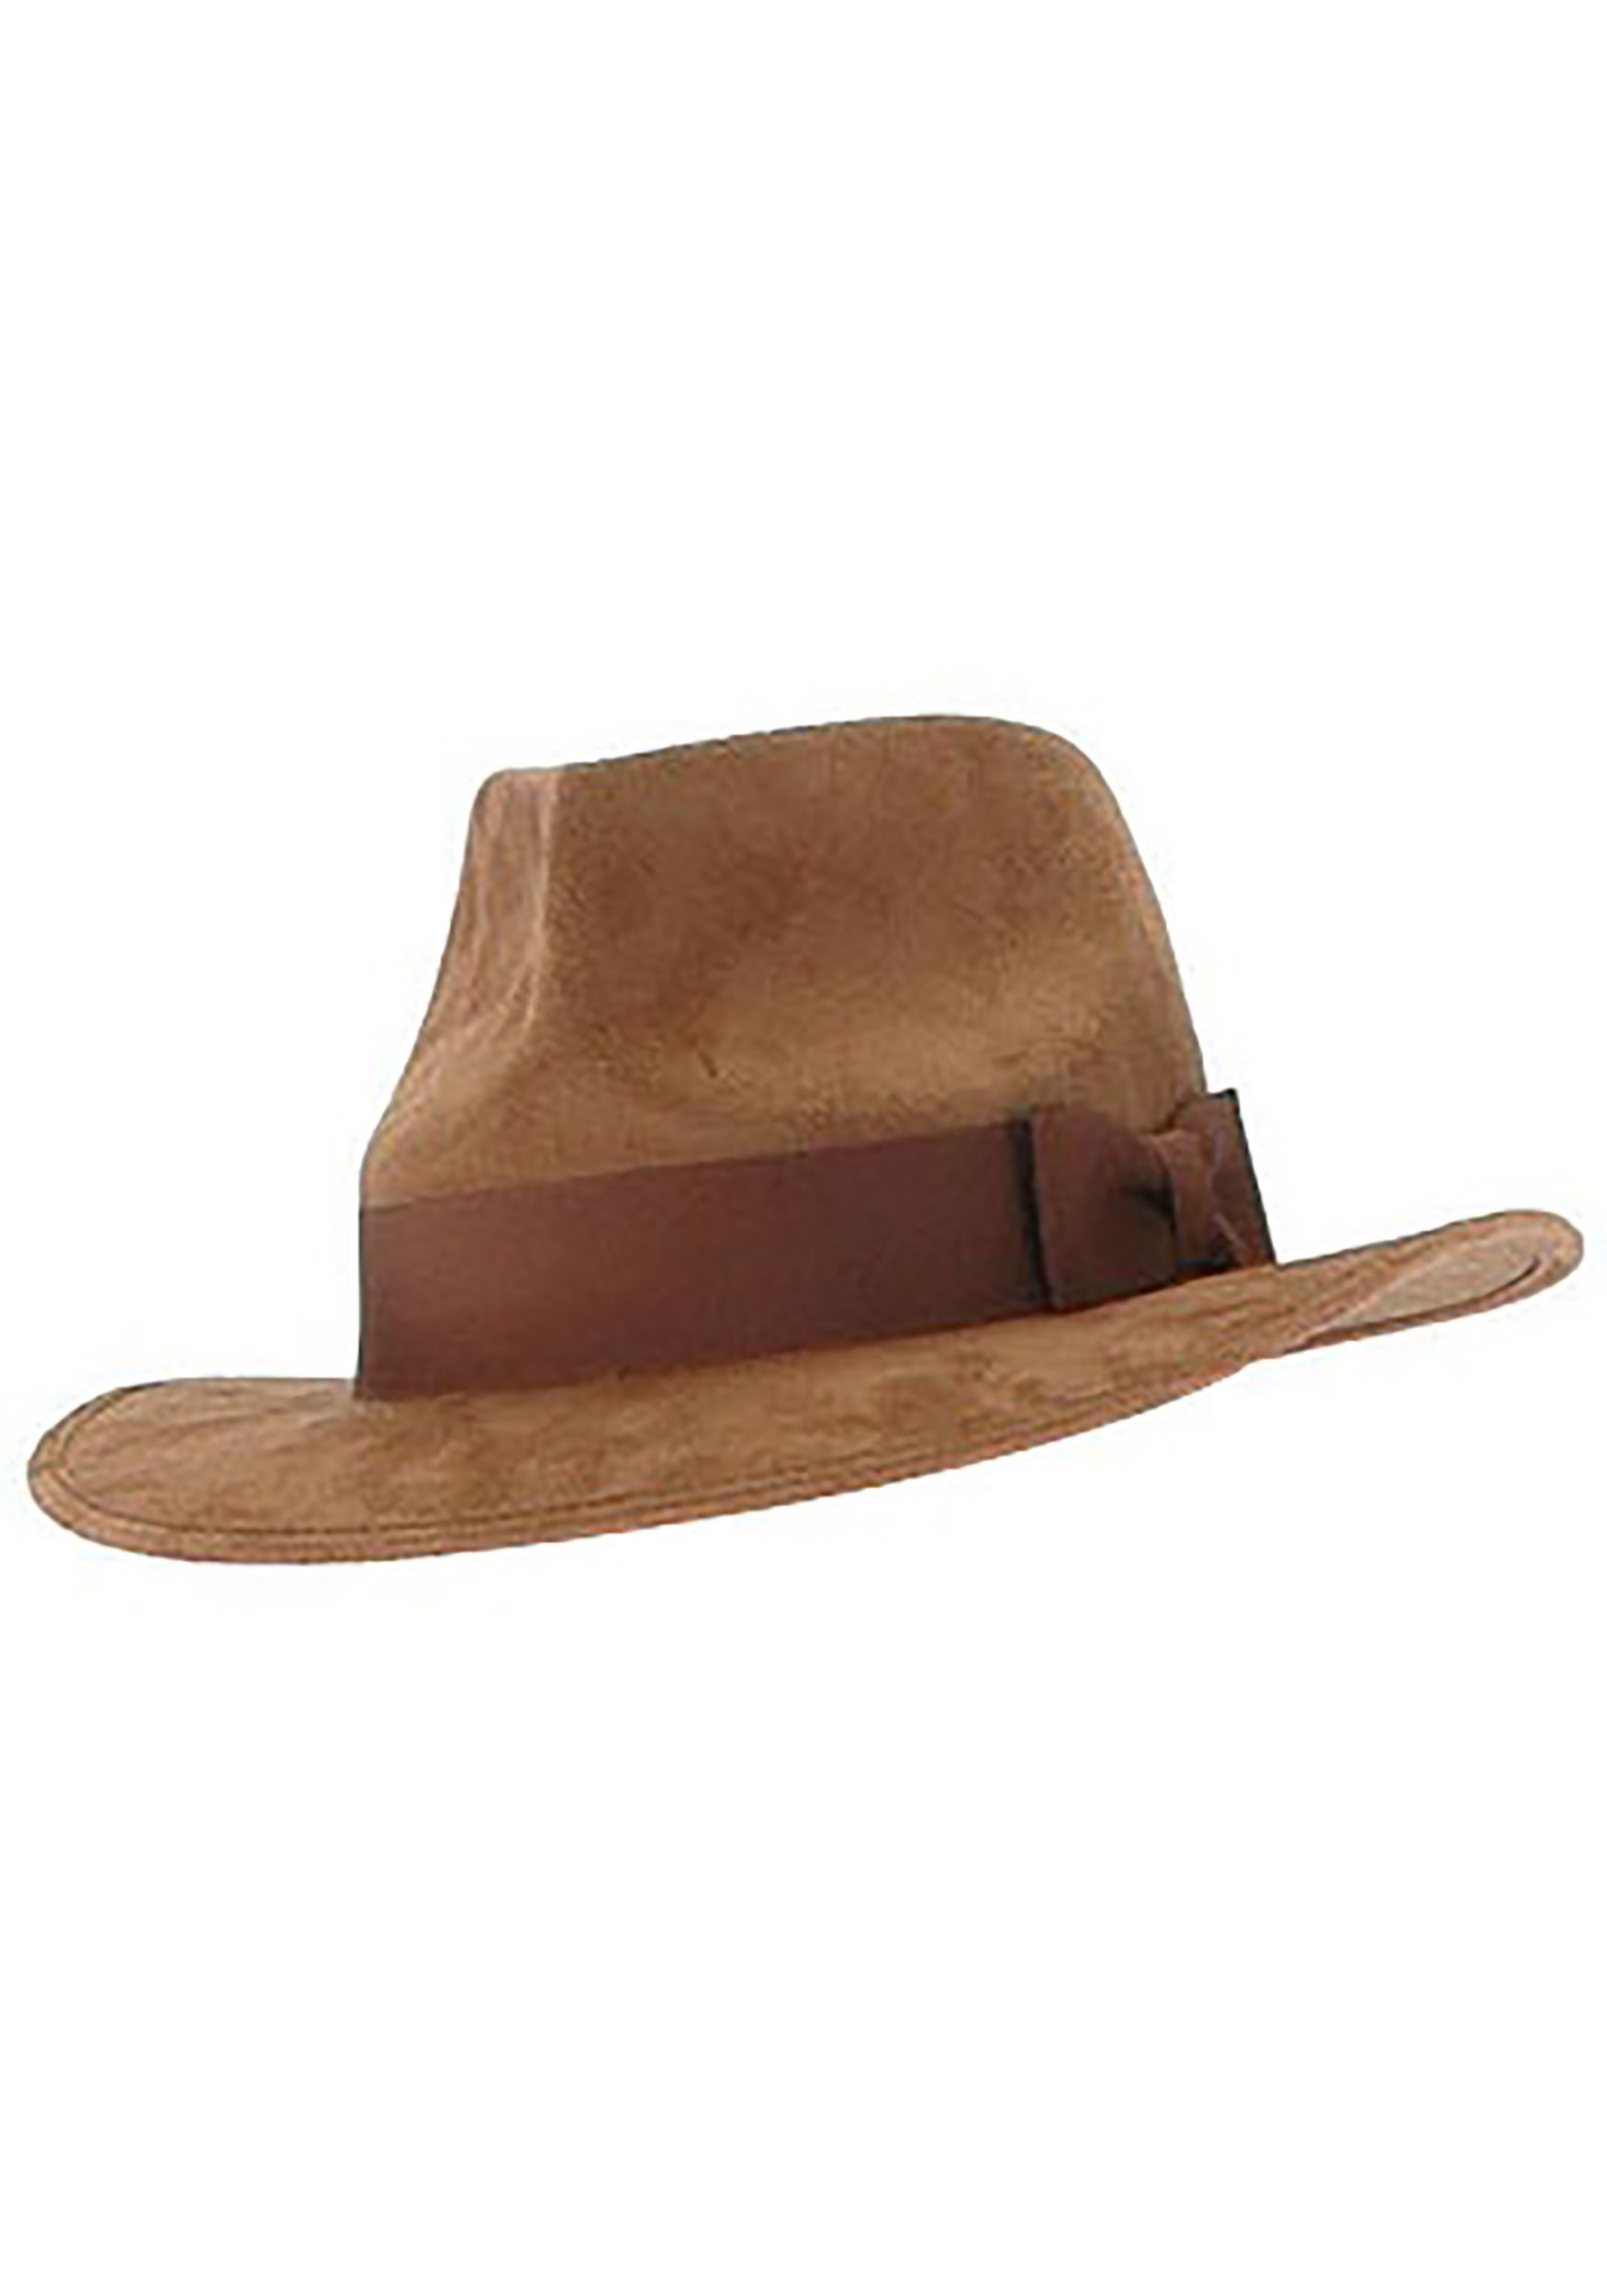 Brown Adventure Fedora Hat For Men